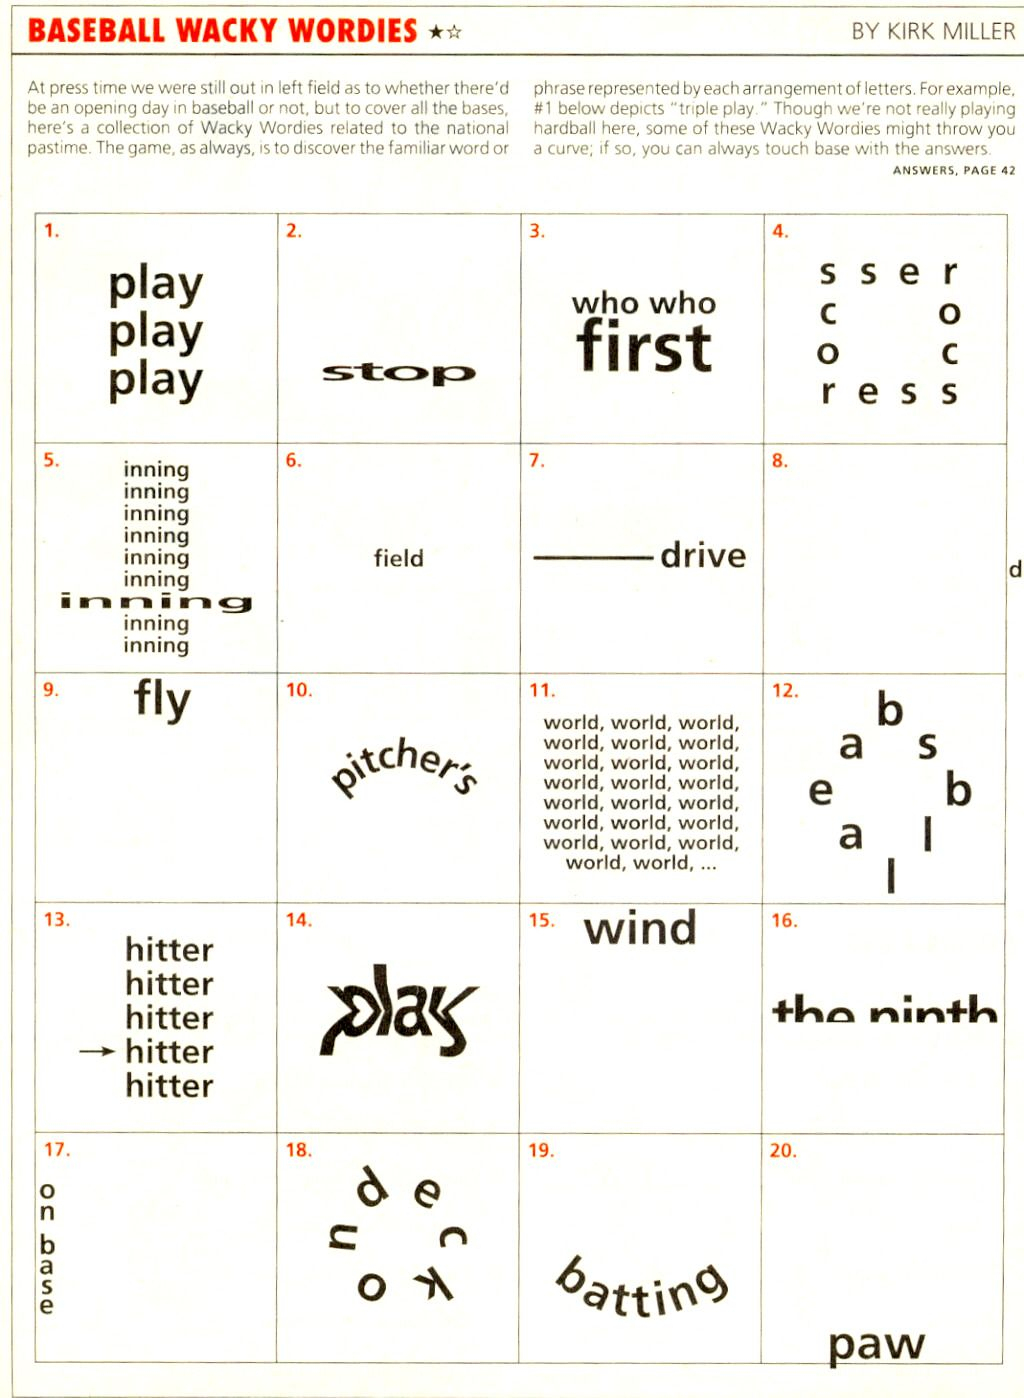 Wackie Wordies Brainteaser #69 | Wordles - Printable Wordles Puzzles